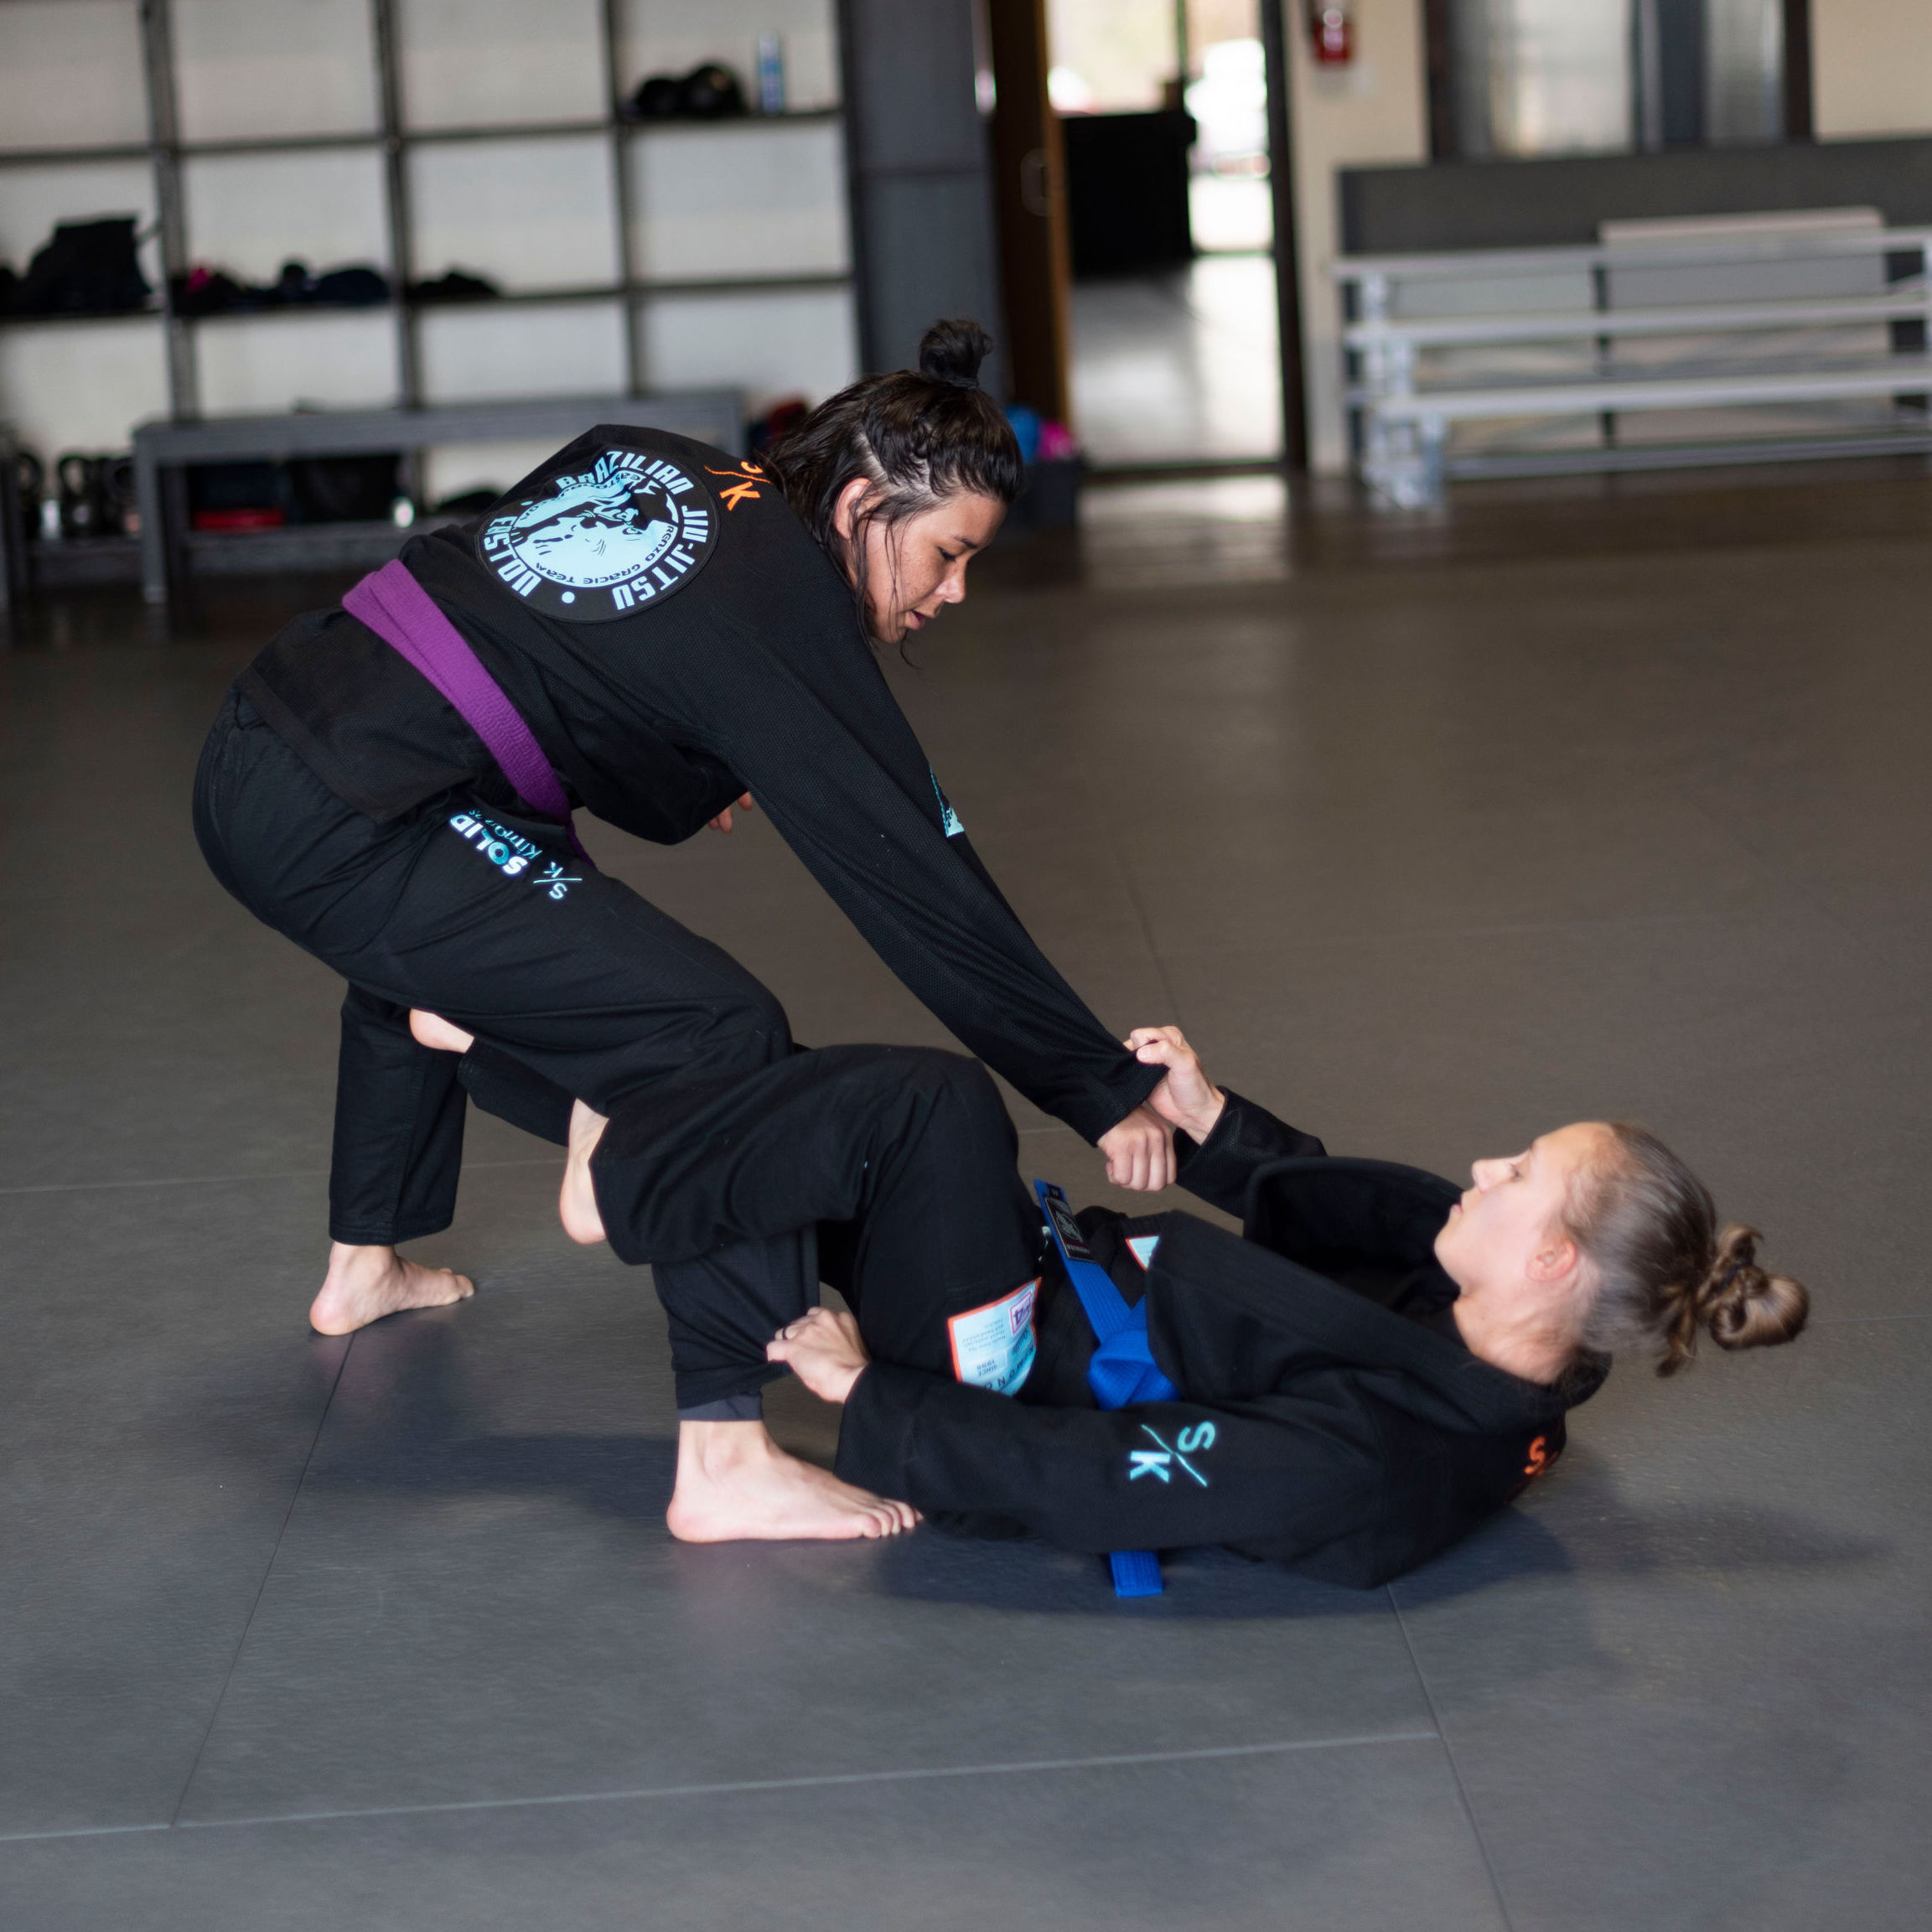 An image of two women training Brazilian Jiu-Jitsu at Easton Training Center, a Martial Arts academy in Denver, Colorado.